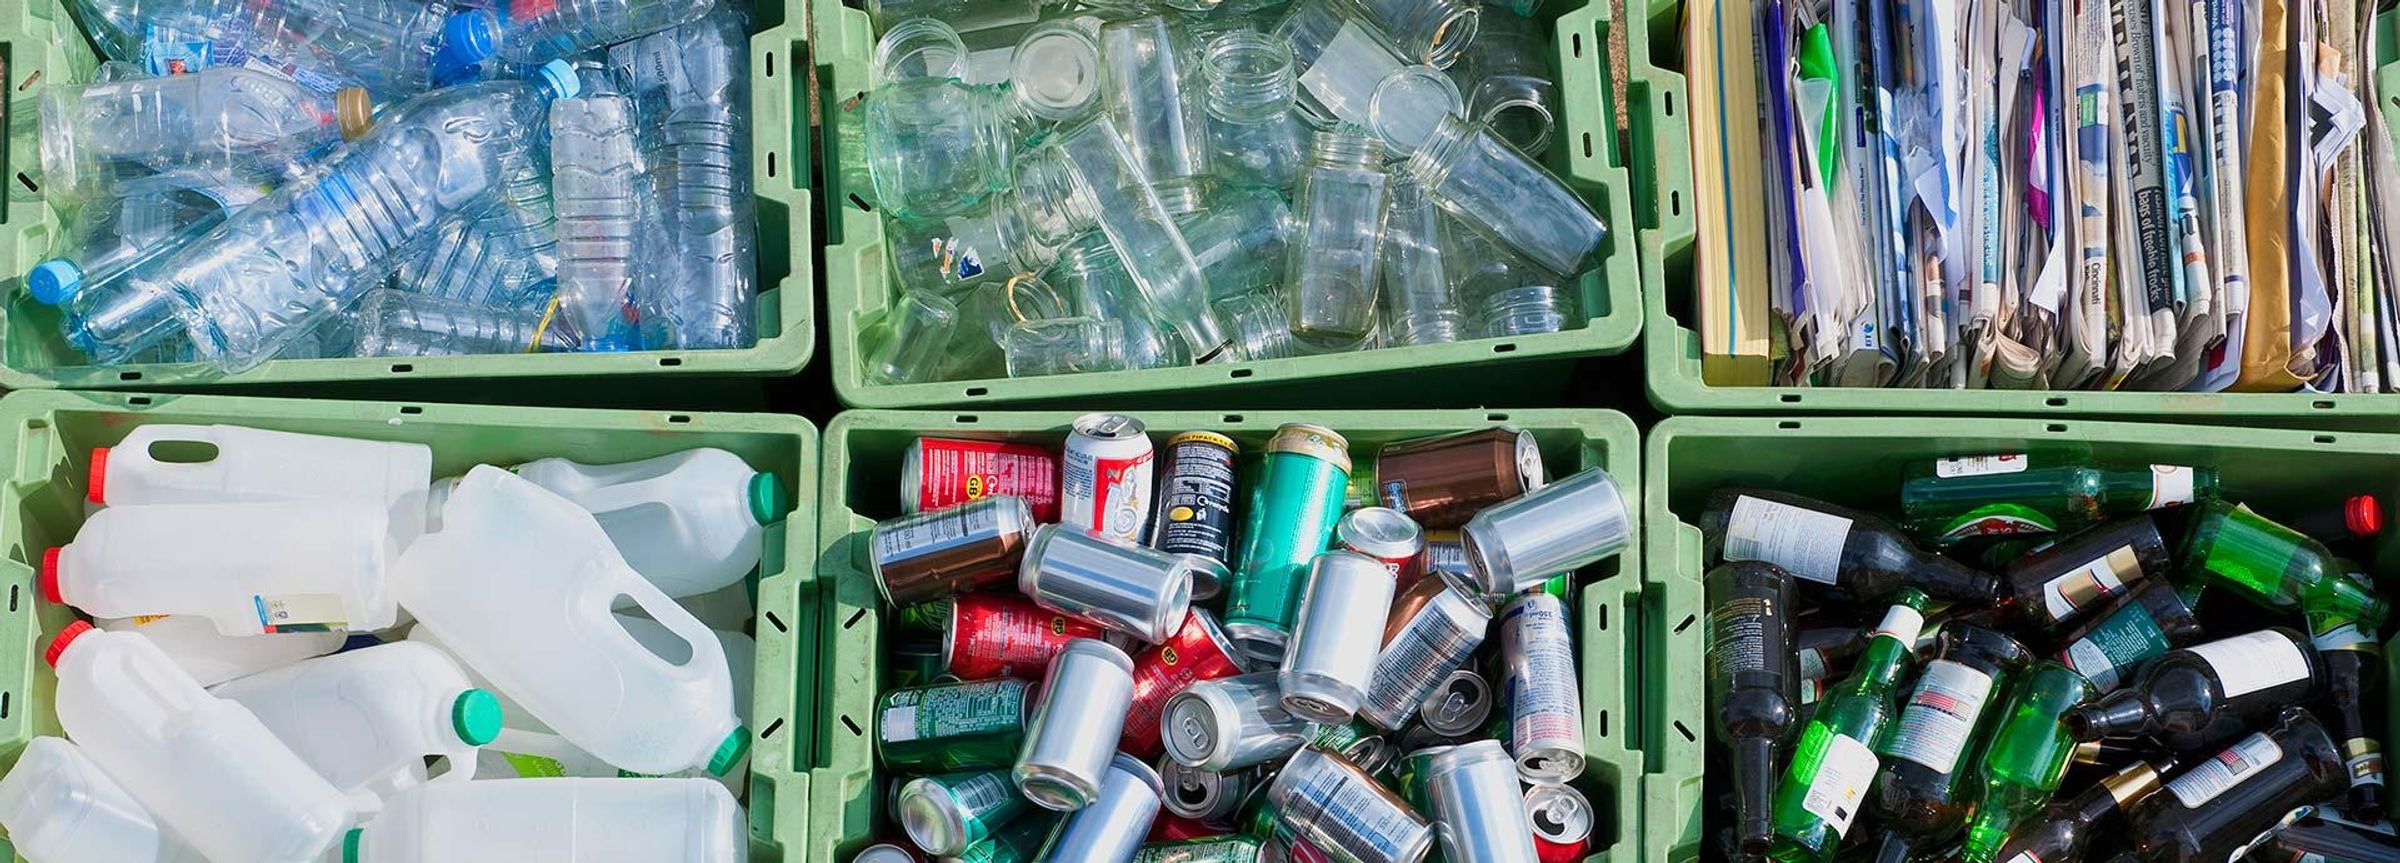 Sanofi Gesundheitstrend: Müll reduzieren, Wasser sparen und bewusst einkaufen